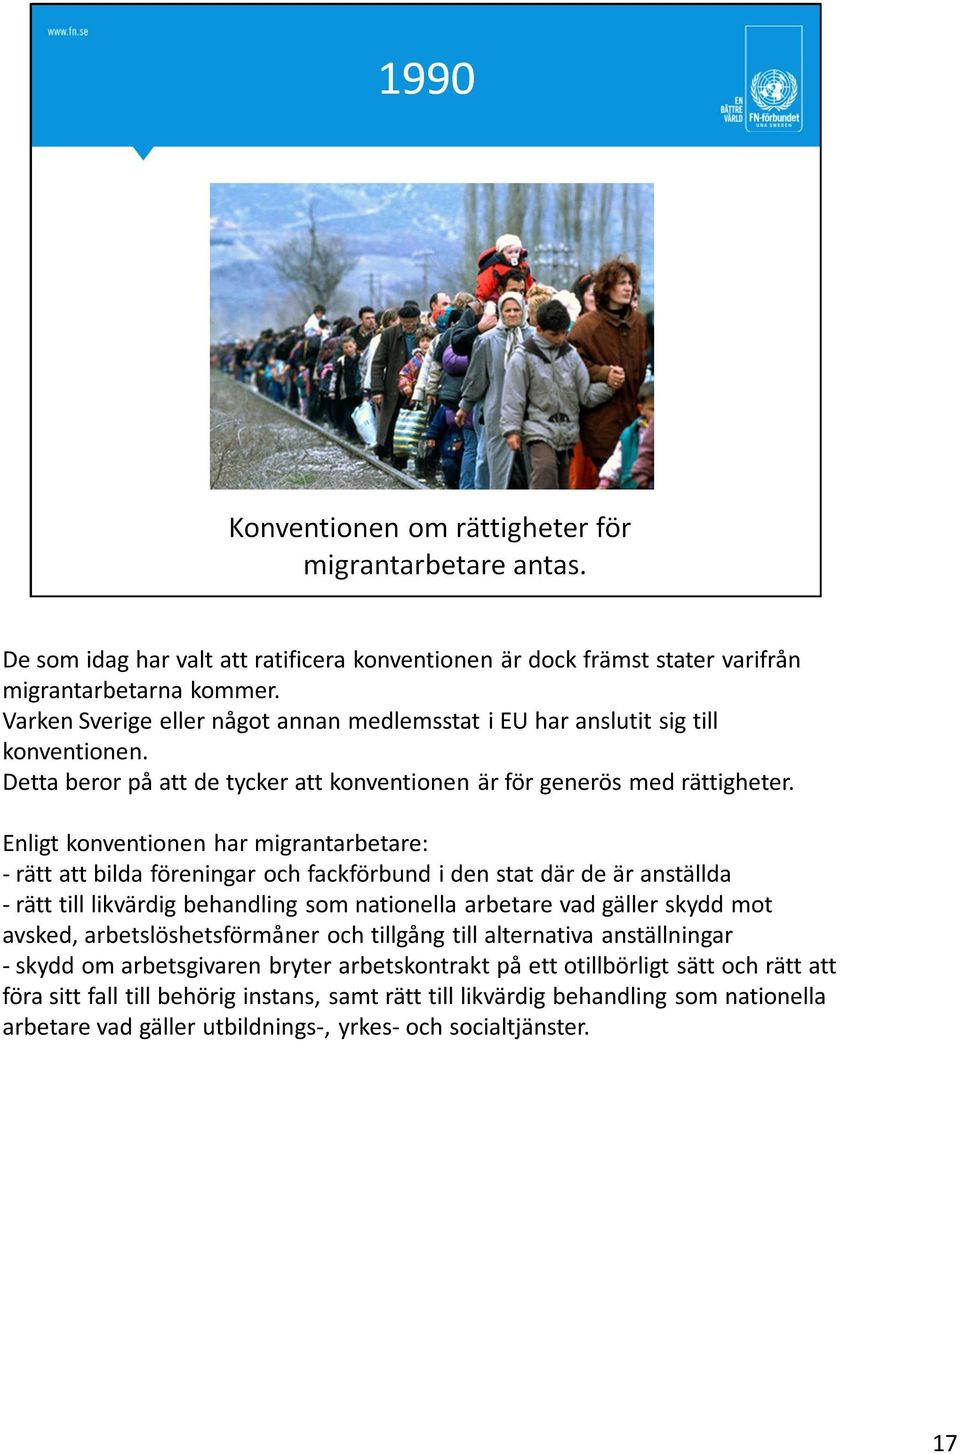 Enligt konventionen har migrantarbetare: - rätt att bilda föreningar och fackförbund i den stat där de är anställda - rätt till likvärdig behandling som nationella arbetare vad gäller skydd mot